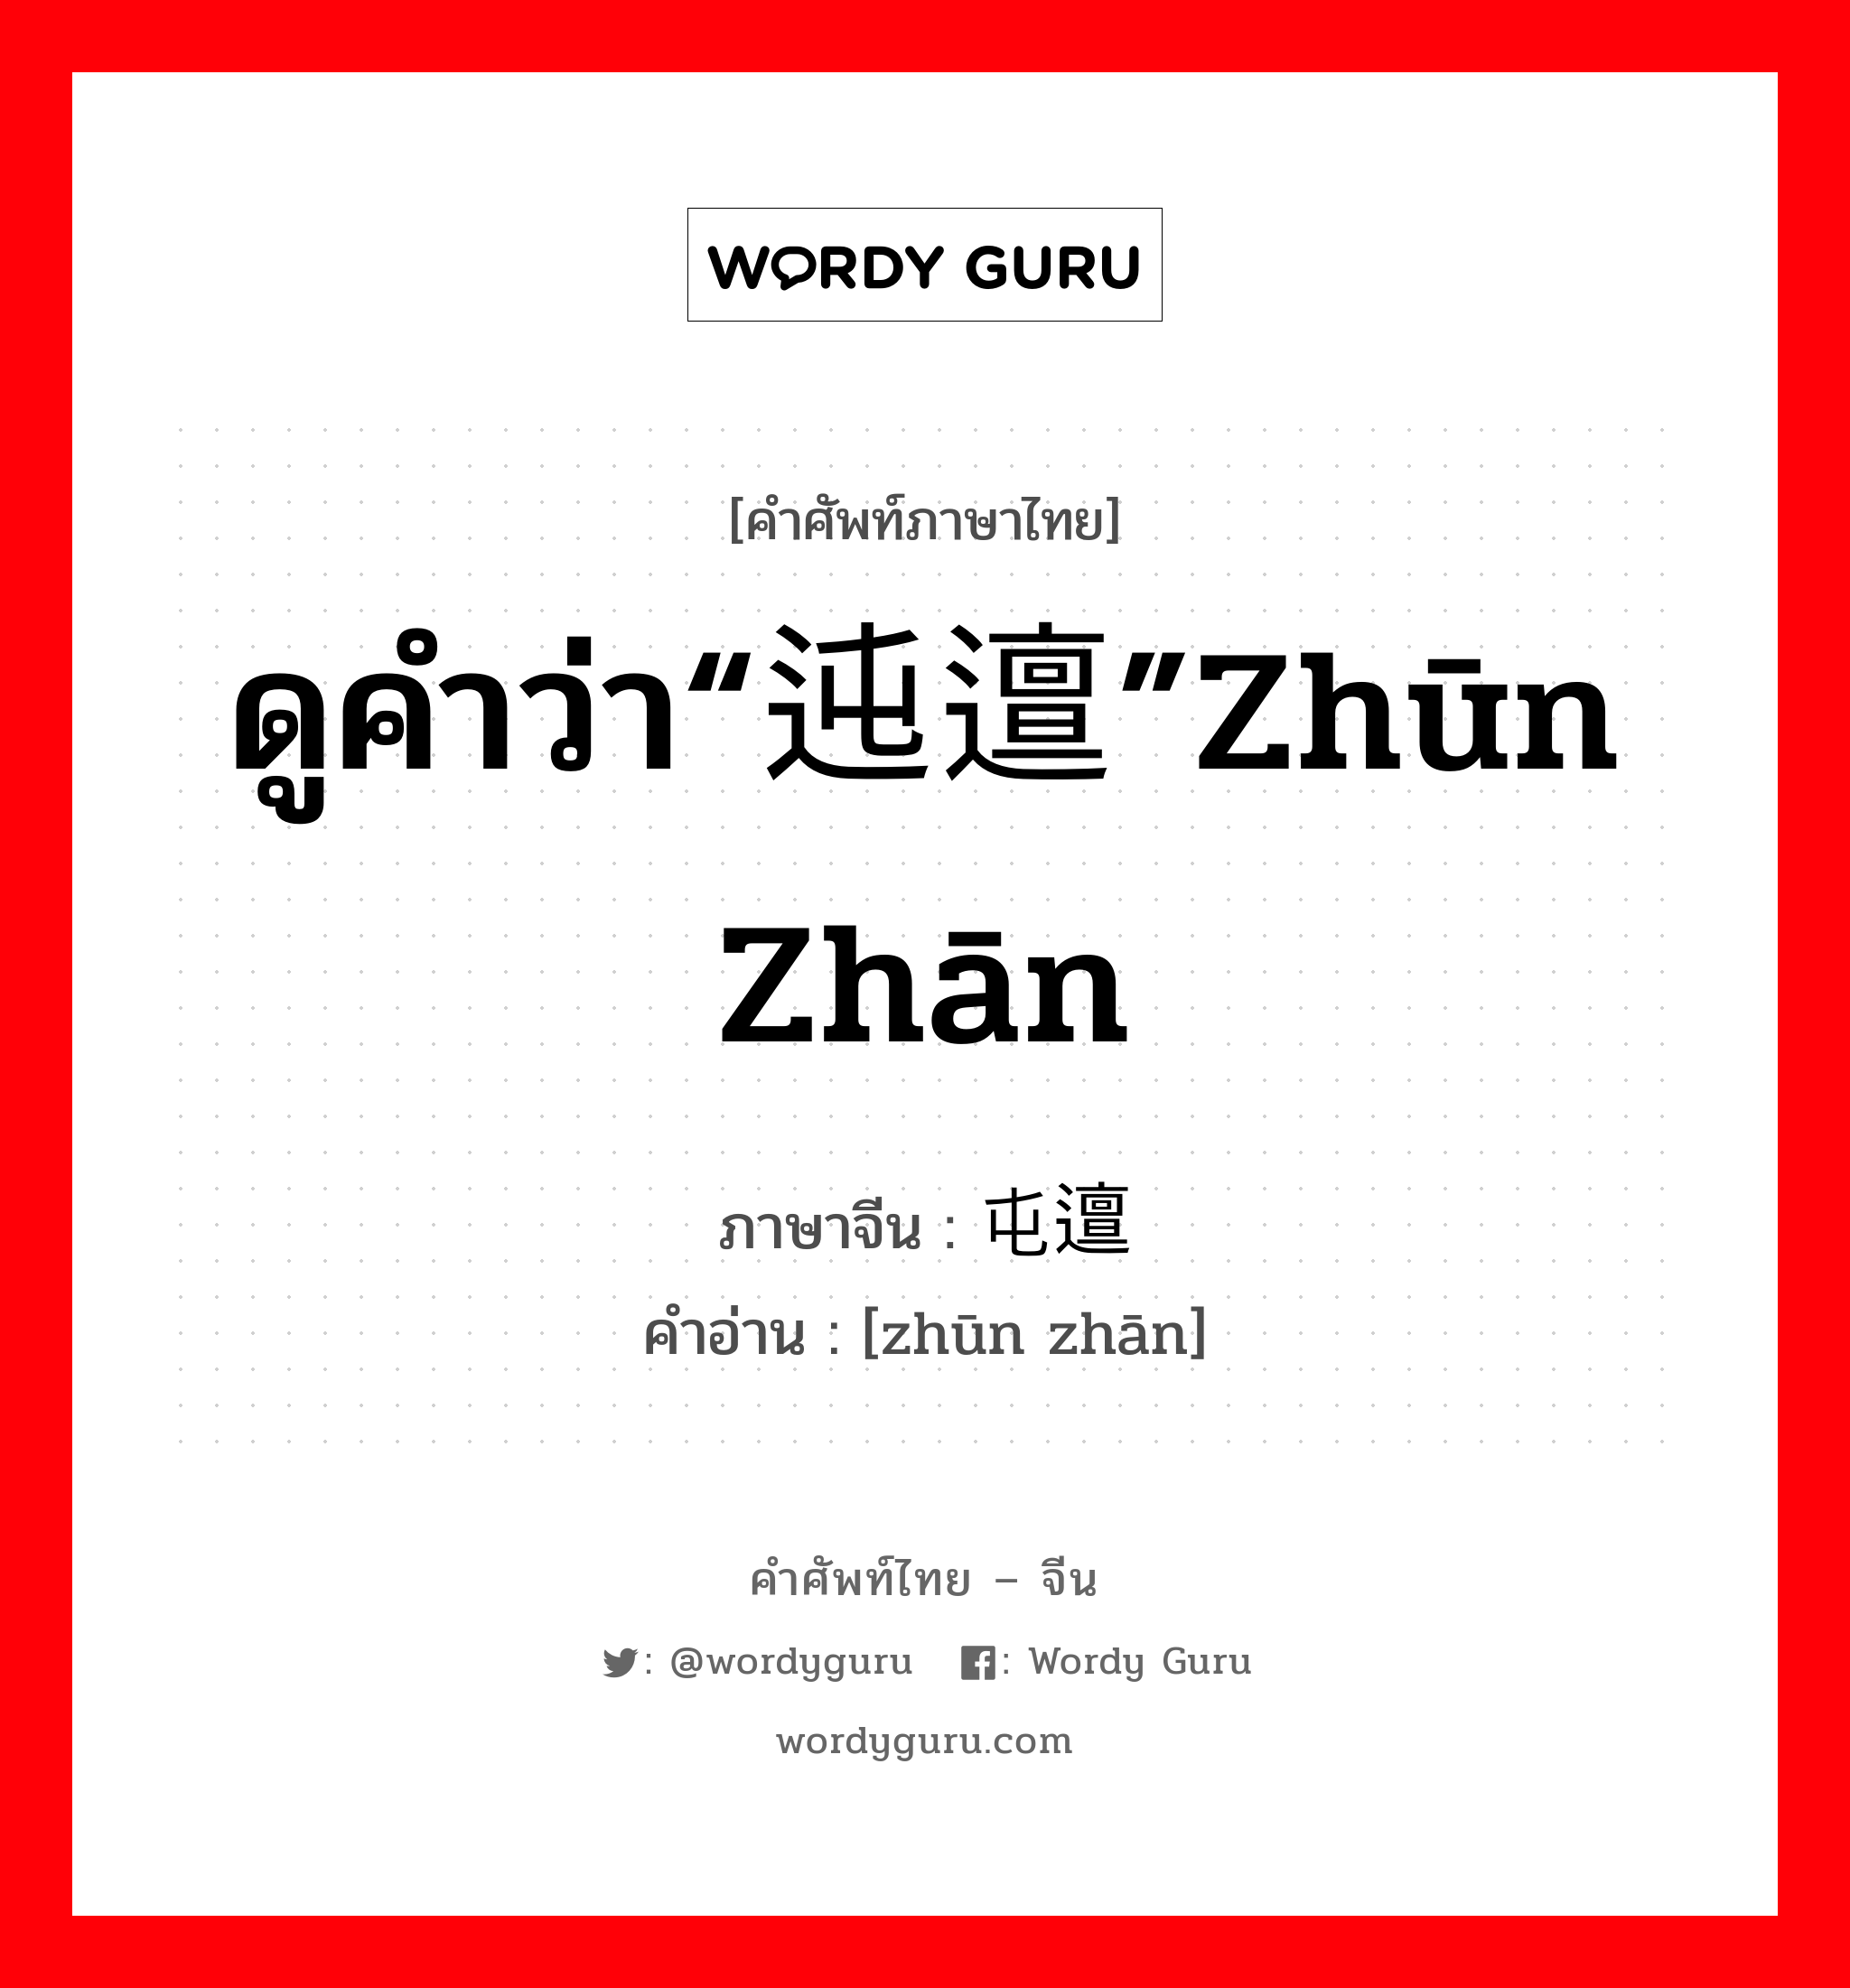 ดูคำว่า“迍邅”zhūn zhān ภาษาจีนคืออะไร, คำศัพท์ภาษาไทย - จีน ดูคำว่า“迍邅”zhūn zhān ภาษาจีน 屯邅 คำอ่าน [zhūn zhān]